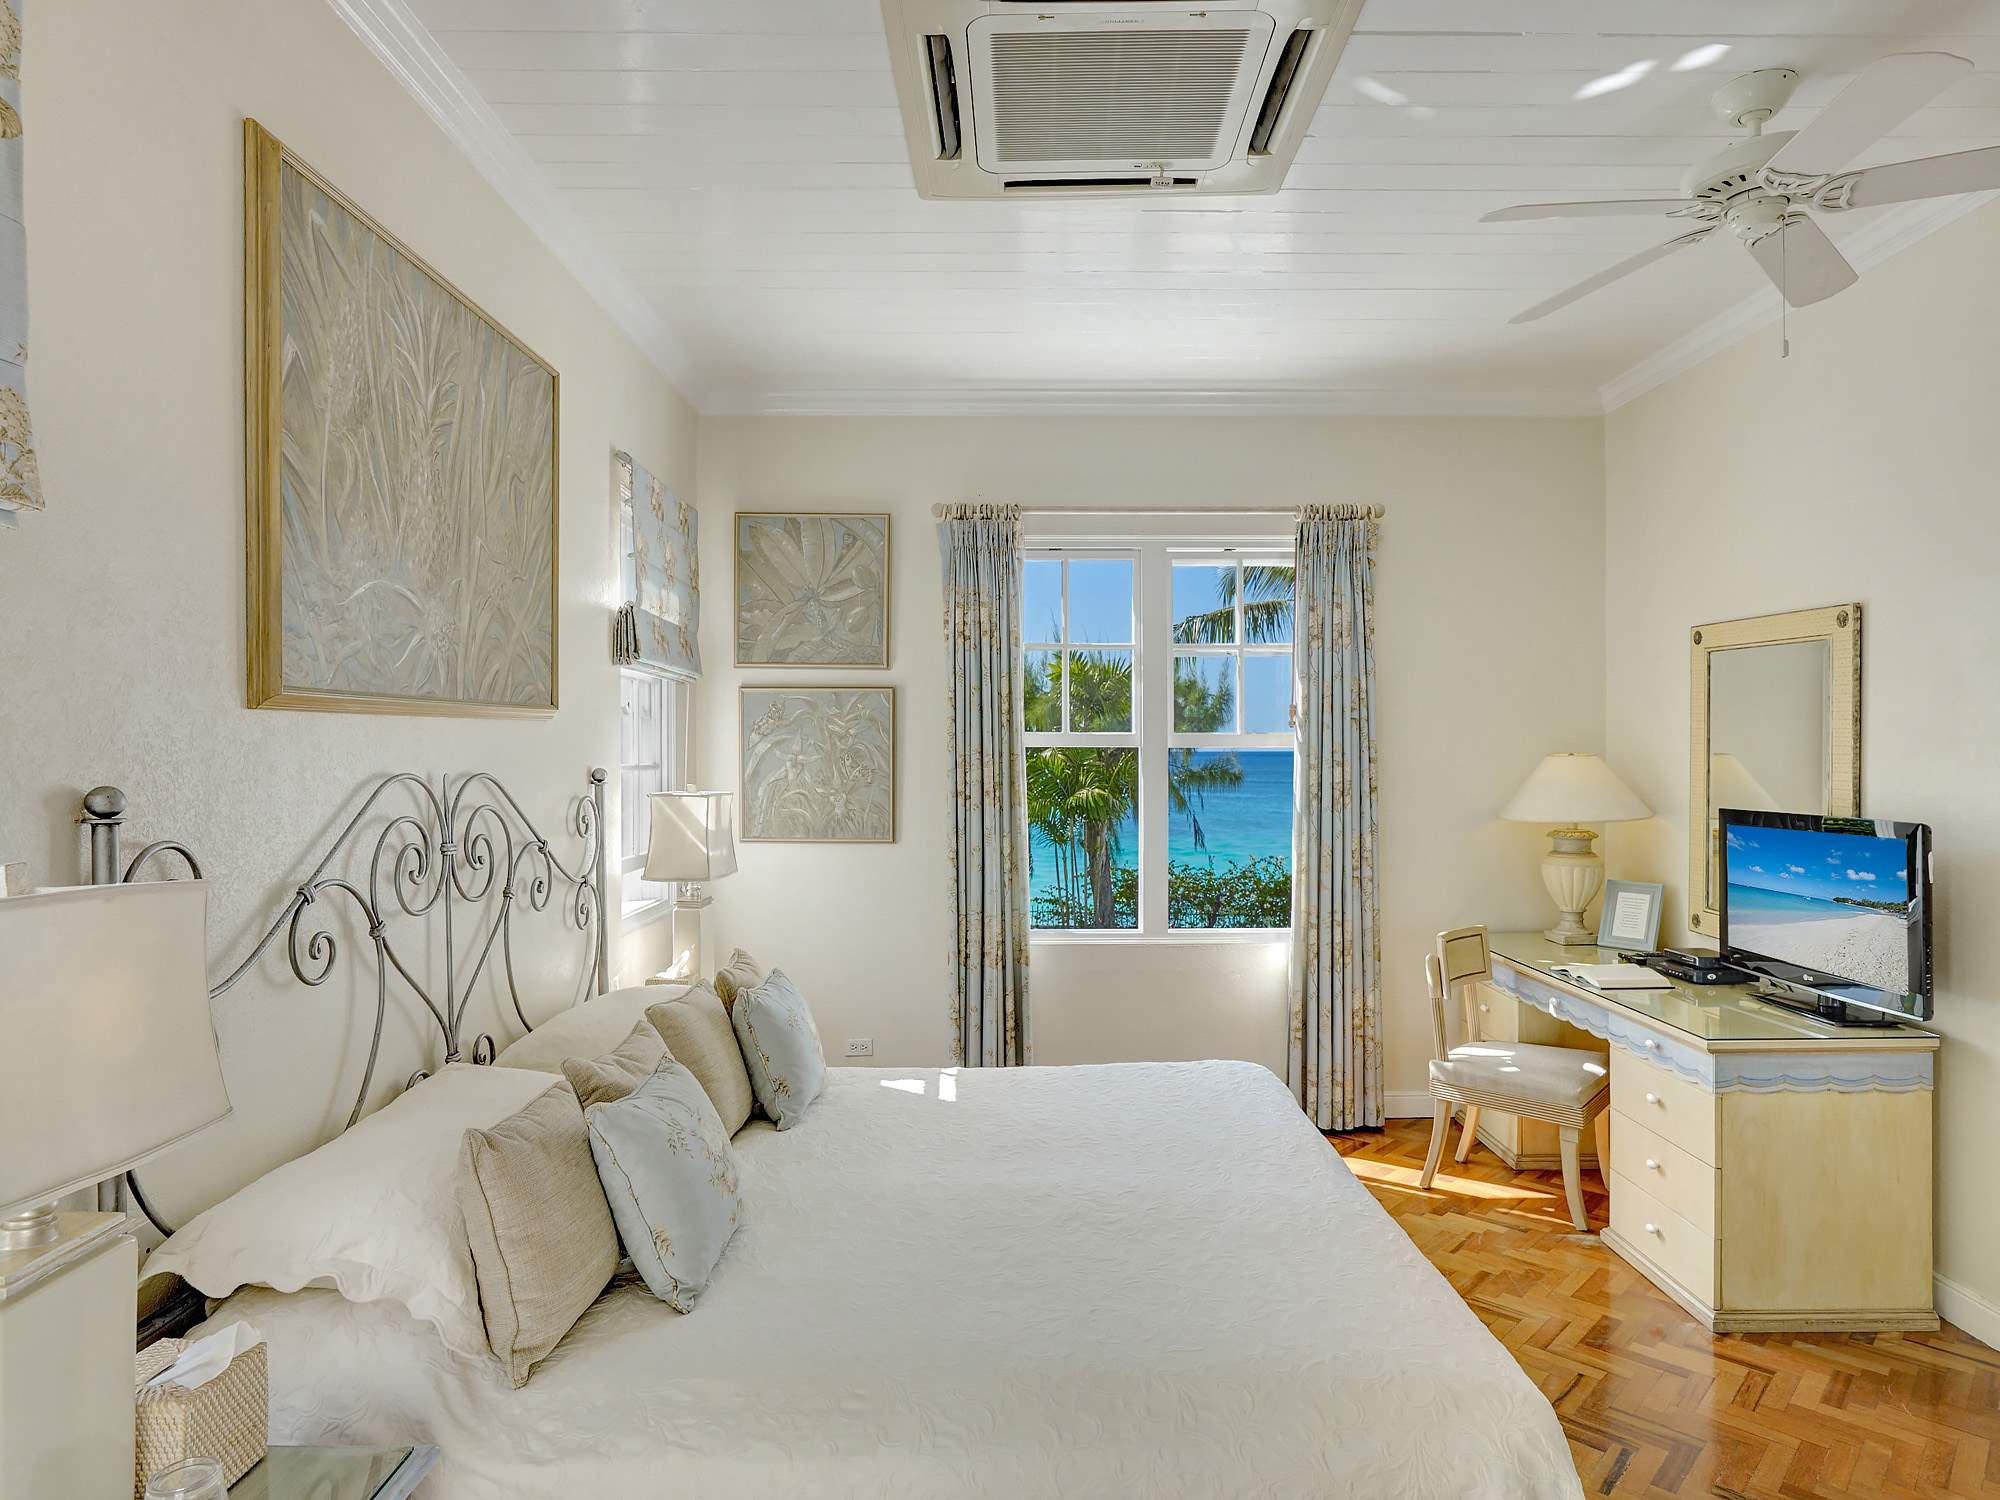 New Mansion, 4 bedroom villa in St. James & West Coast, Barbados Photo #16